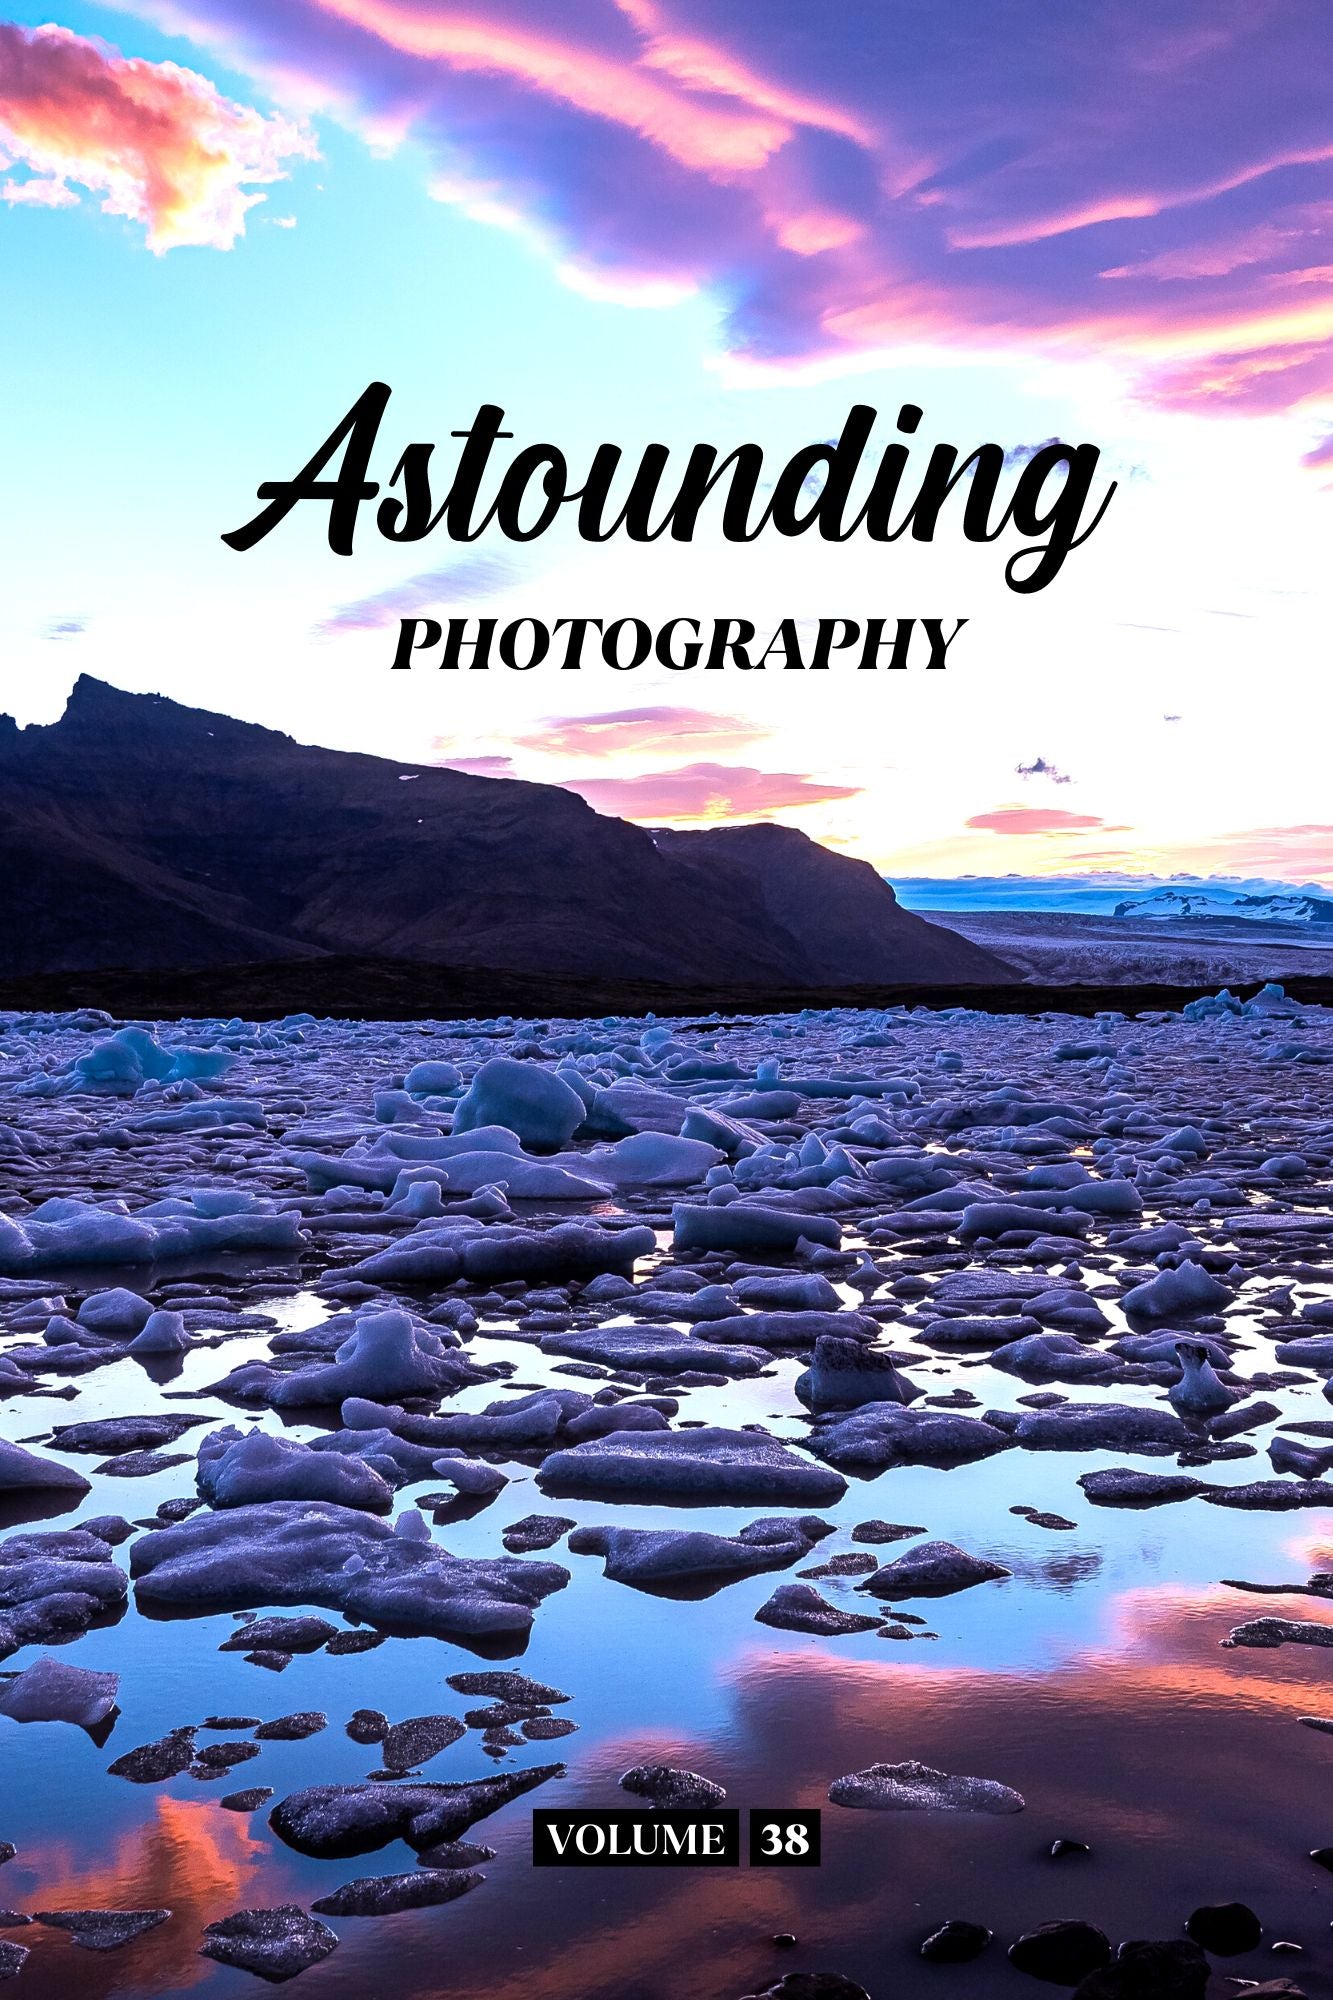 Astounding Photography Volume 38 (Physical Book Pre-Order)